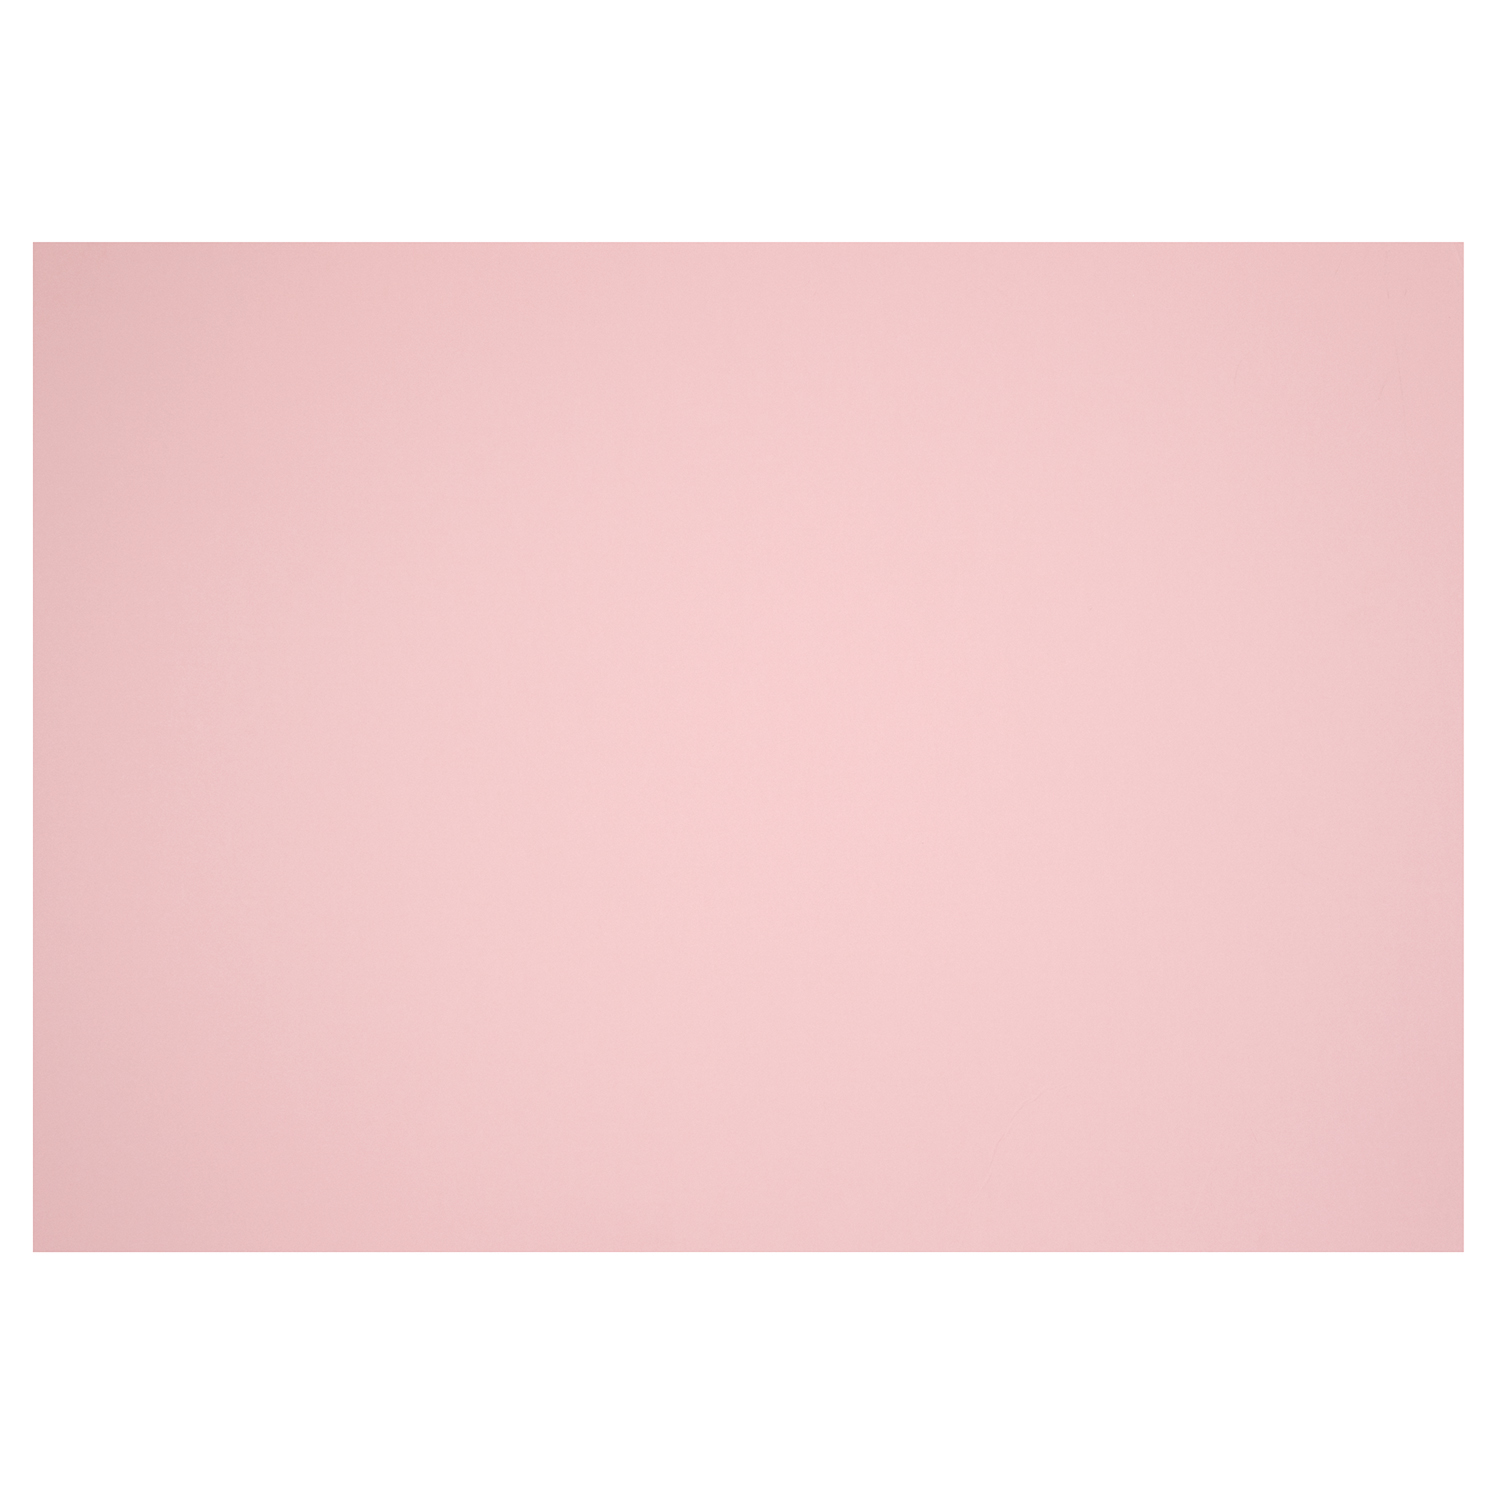 Mount Board - Pastel Pink Image